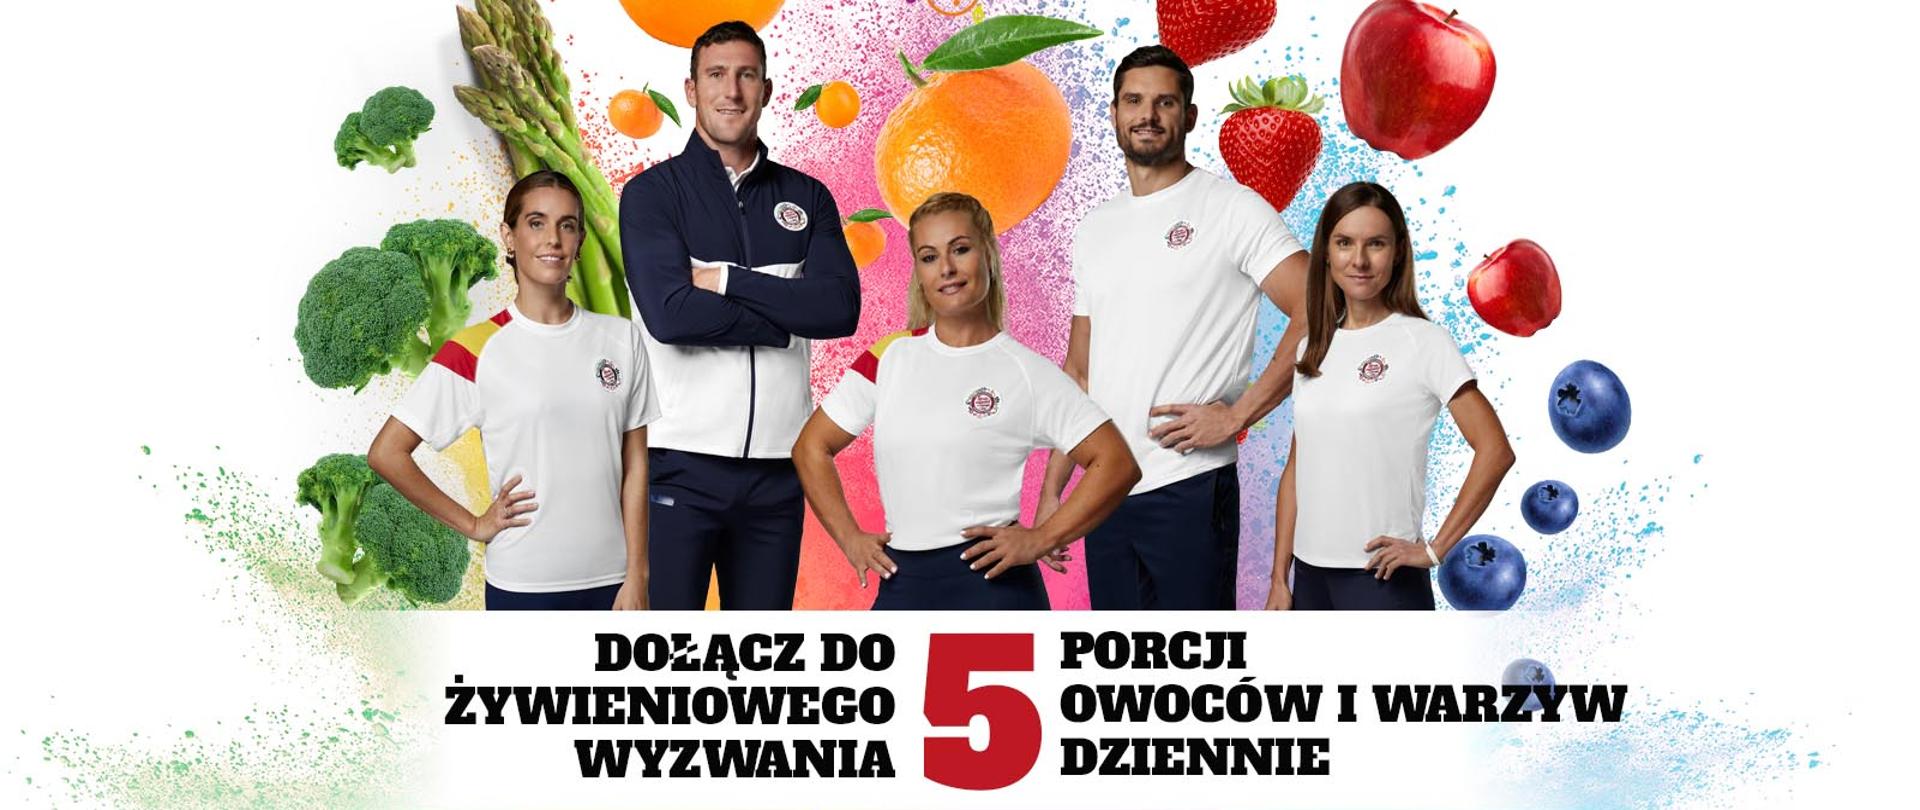 Na plakacie jest hasło: Dołącz do żywieniowego wyzwania, 5 porcji owoców i warzyw dziennie. Na plakacie są zdjęcia pięciu znanych sportowców, medalistów olimpijskich, w tym Maja Włoszczowska.